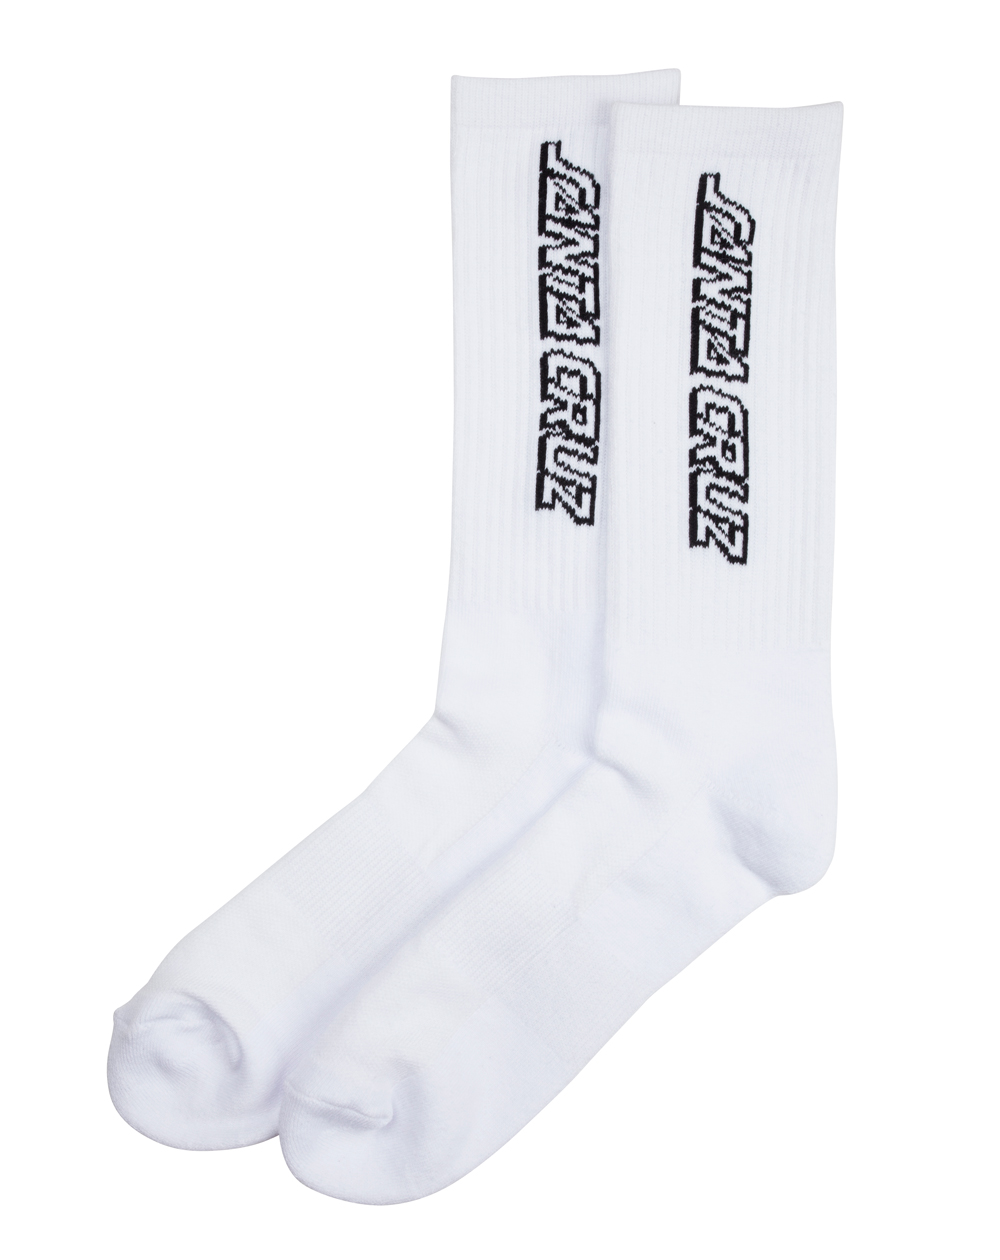 Santa Cruz Men's Socks Classic Strip White